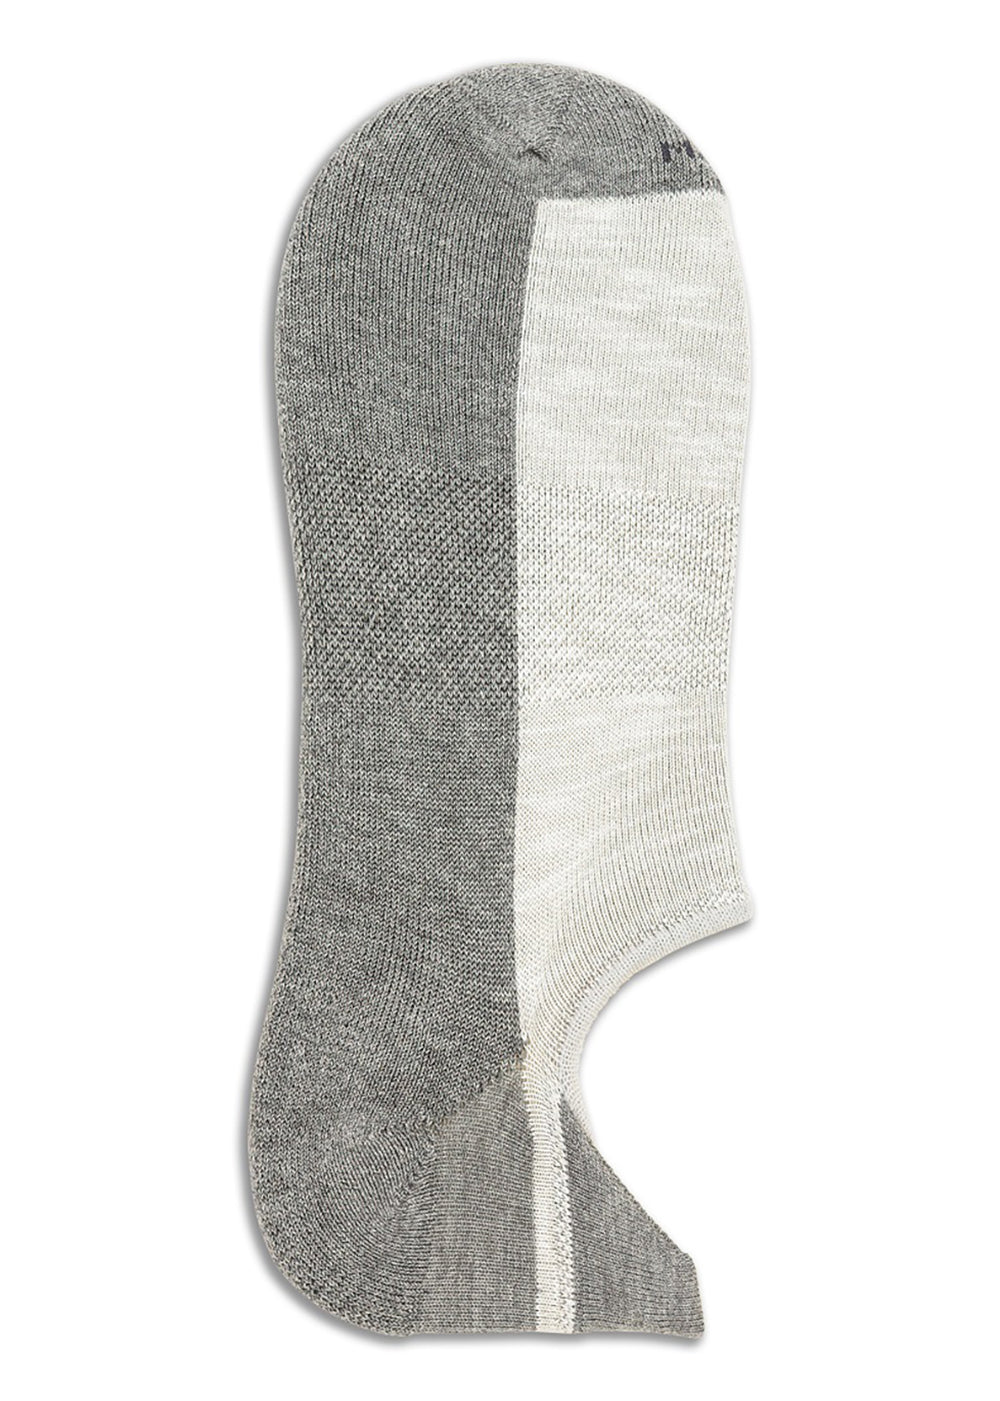 Cotton Sneaker Sock - Grey - Marcoliani Canada - Danali